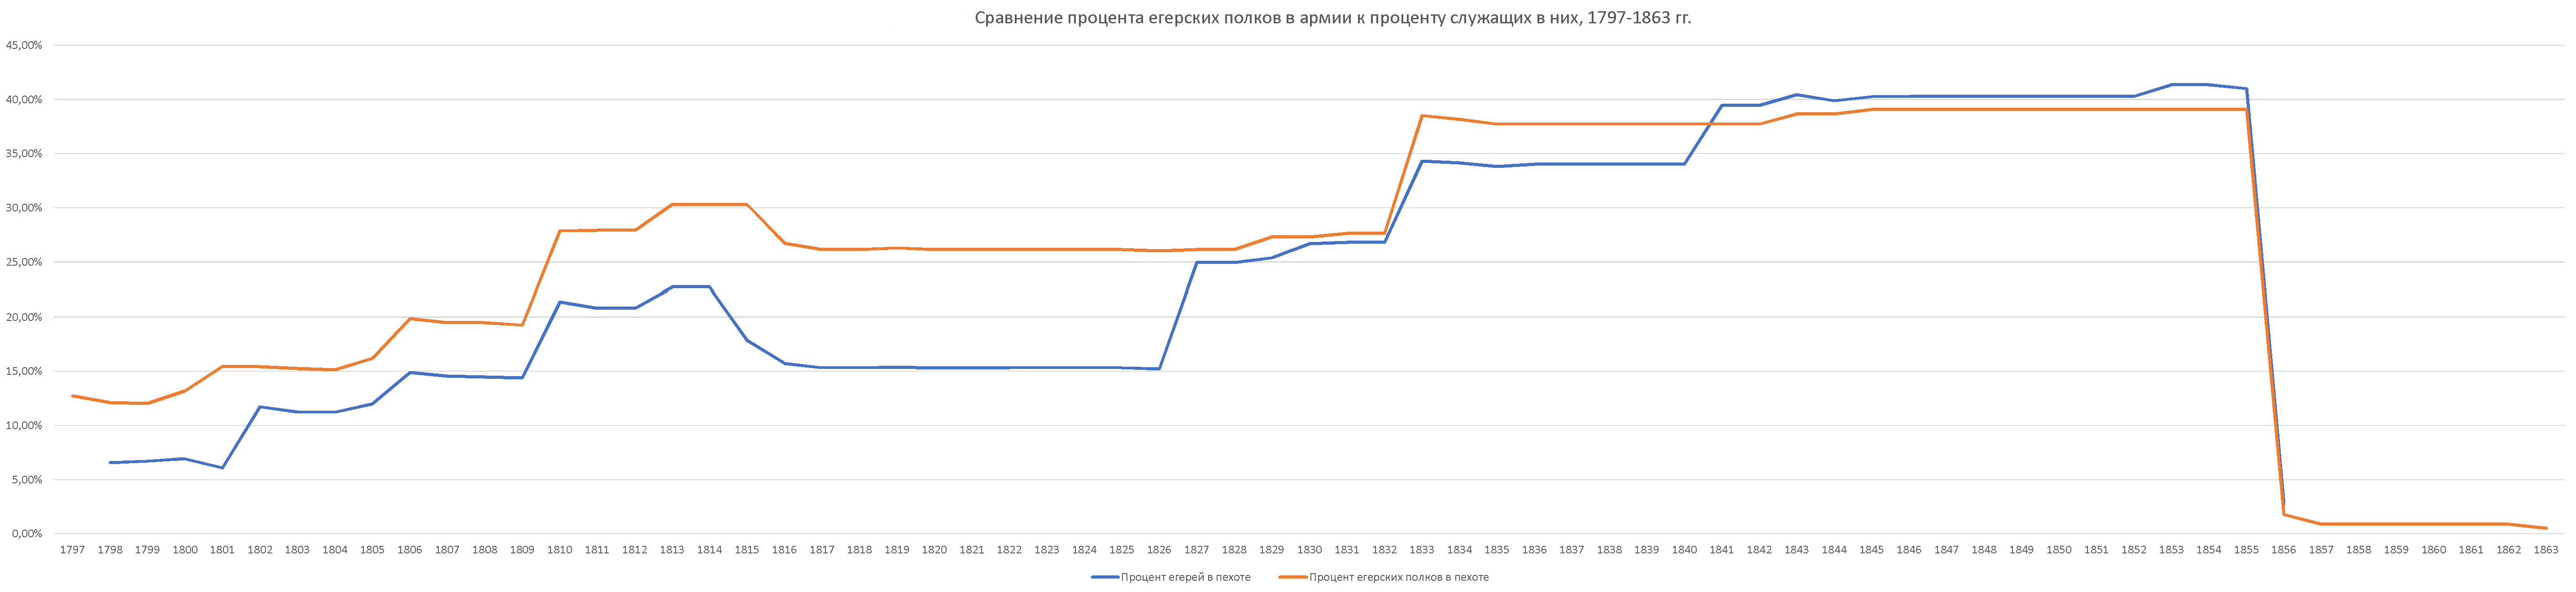 Сравнение процента егерских полков в русской армии к проценту служащих в них